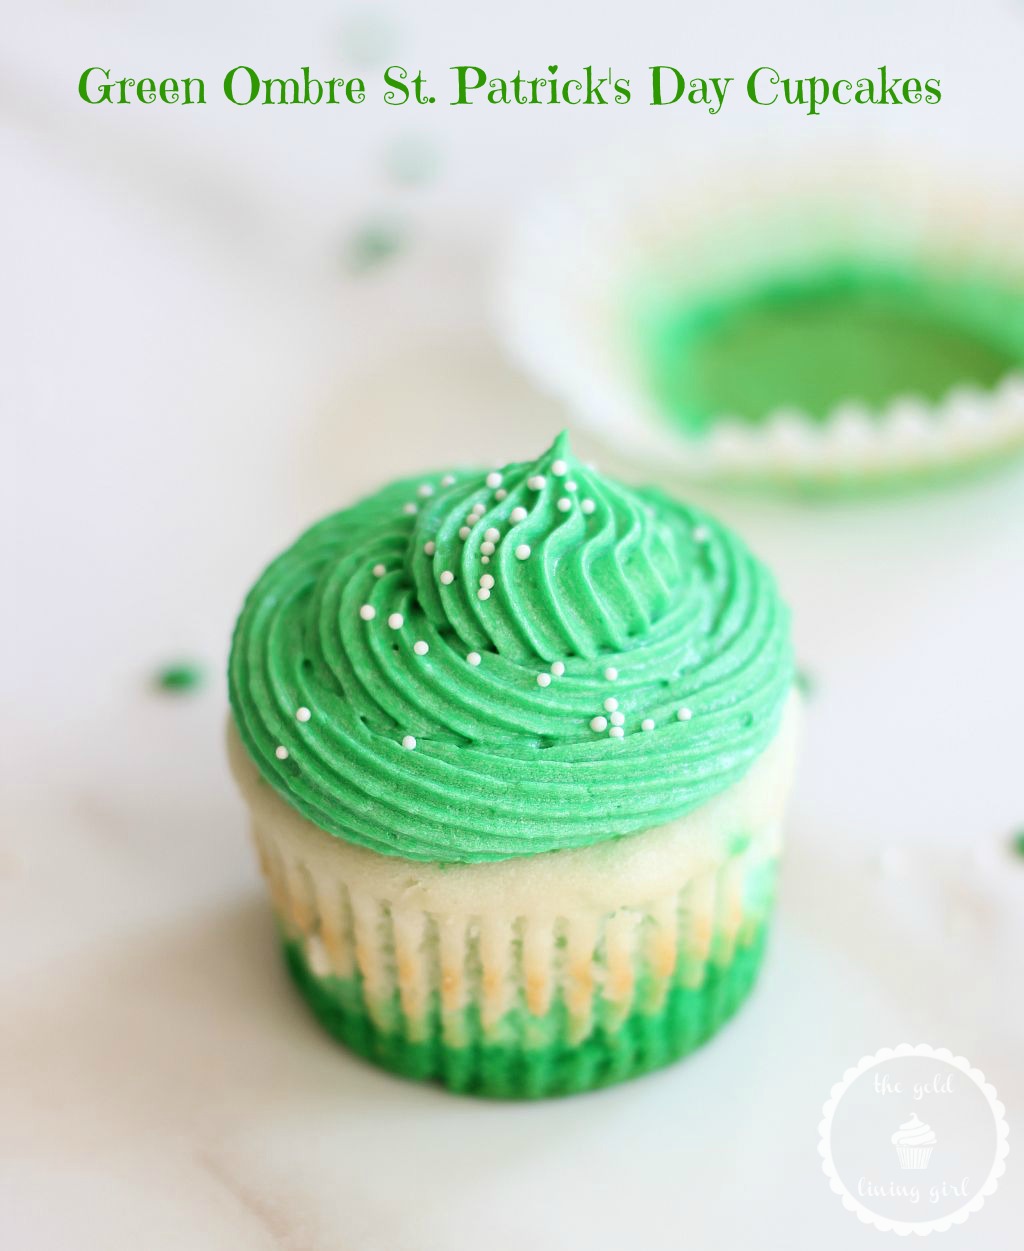 Green ombre cupcakes